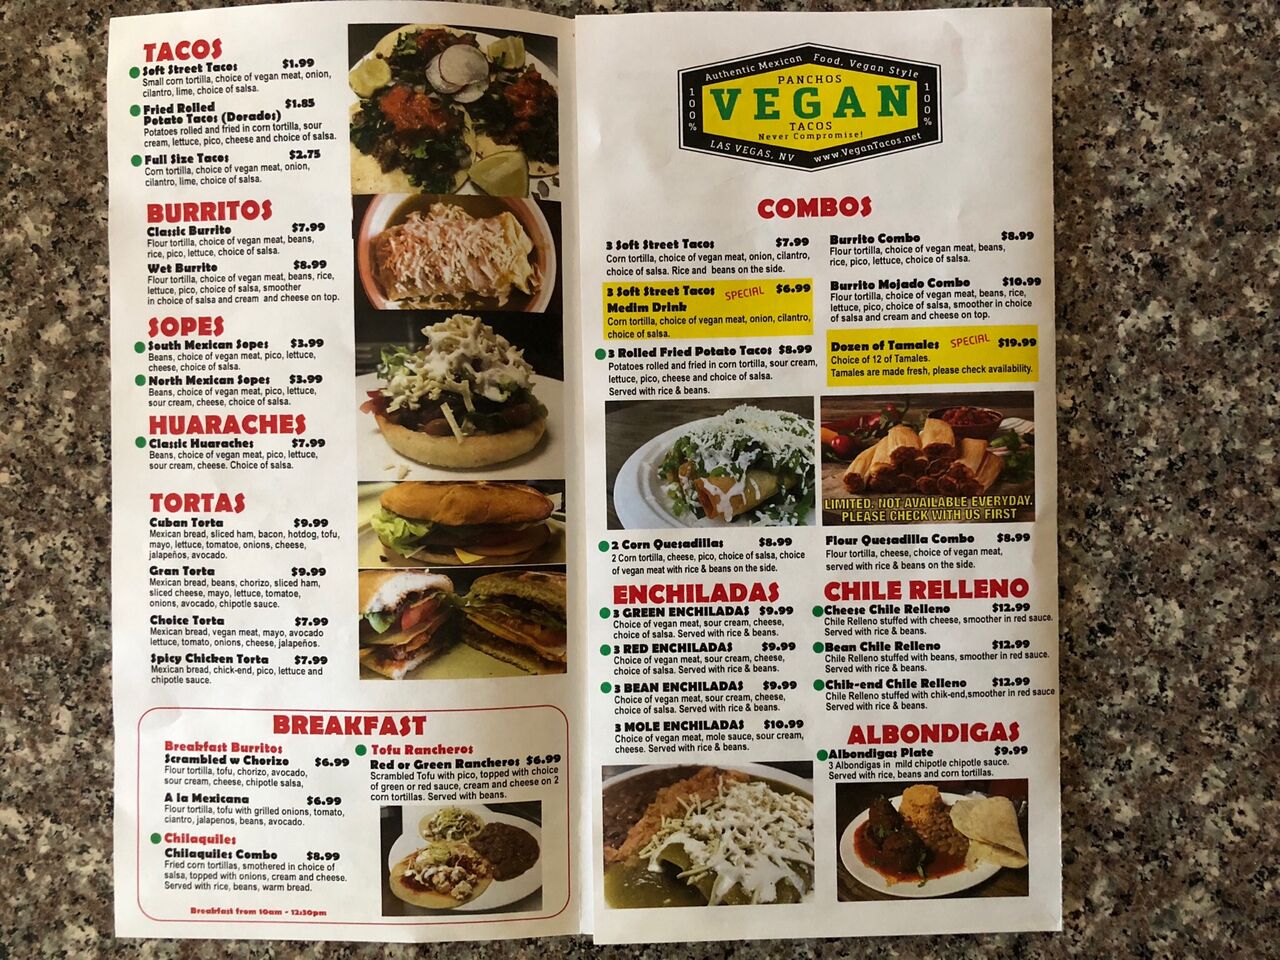 A photo of Panchos Vegan Tacos